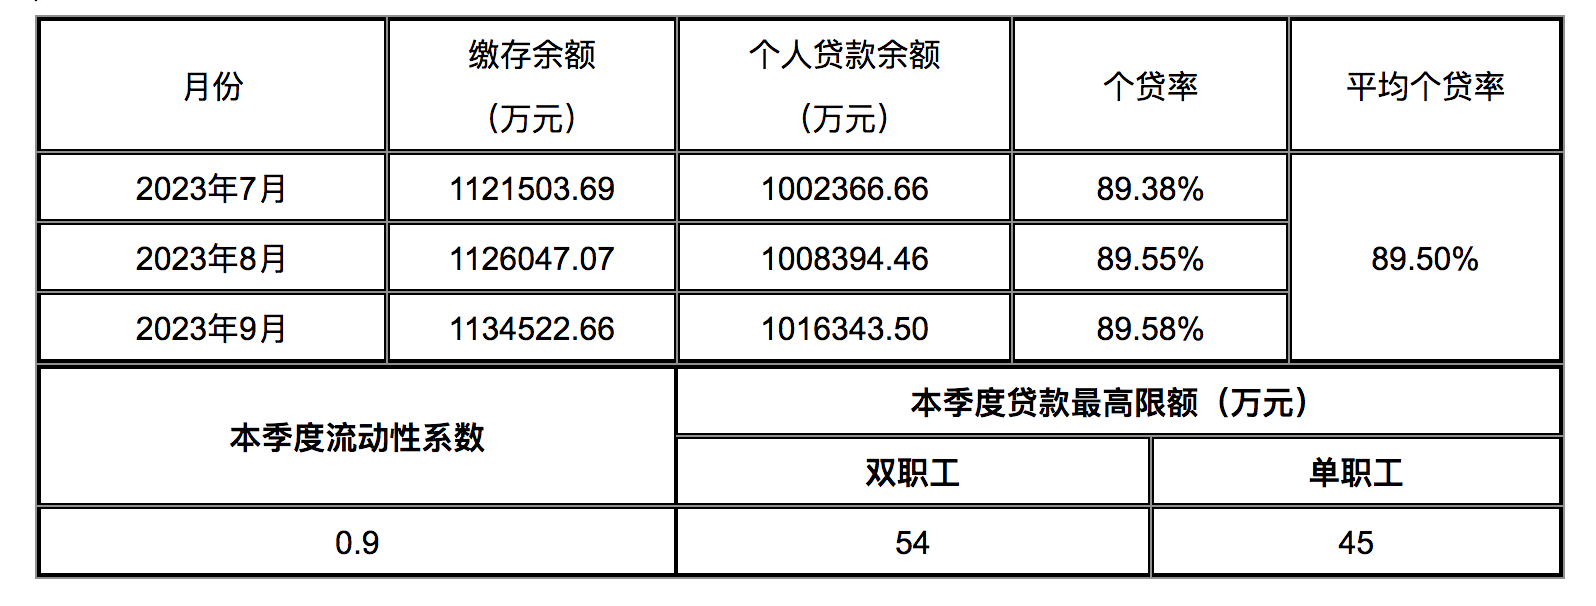 贵州六盘水住房公积金贷款限额调整：双职工54万元，单职工45万元